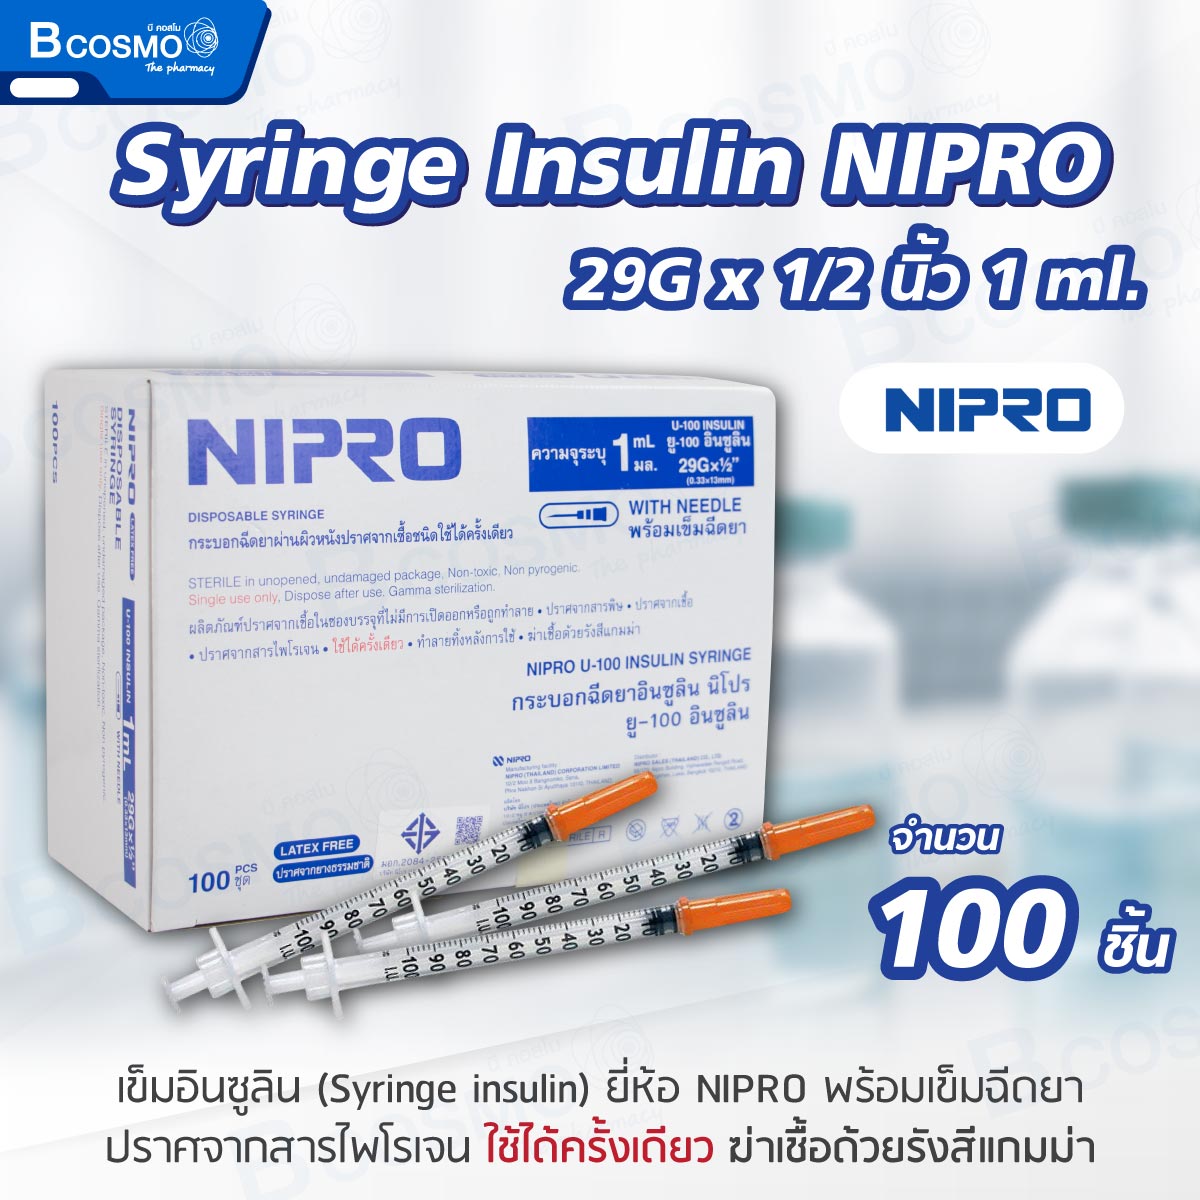 Syringe Insulin NIPRO 29Gx1/2นิ้ว 1 ml. [100 ชิ้น/กล่อง]